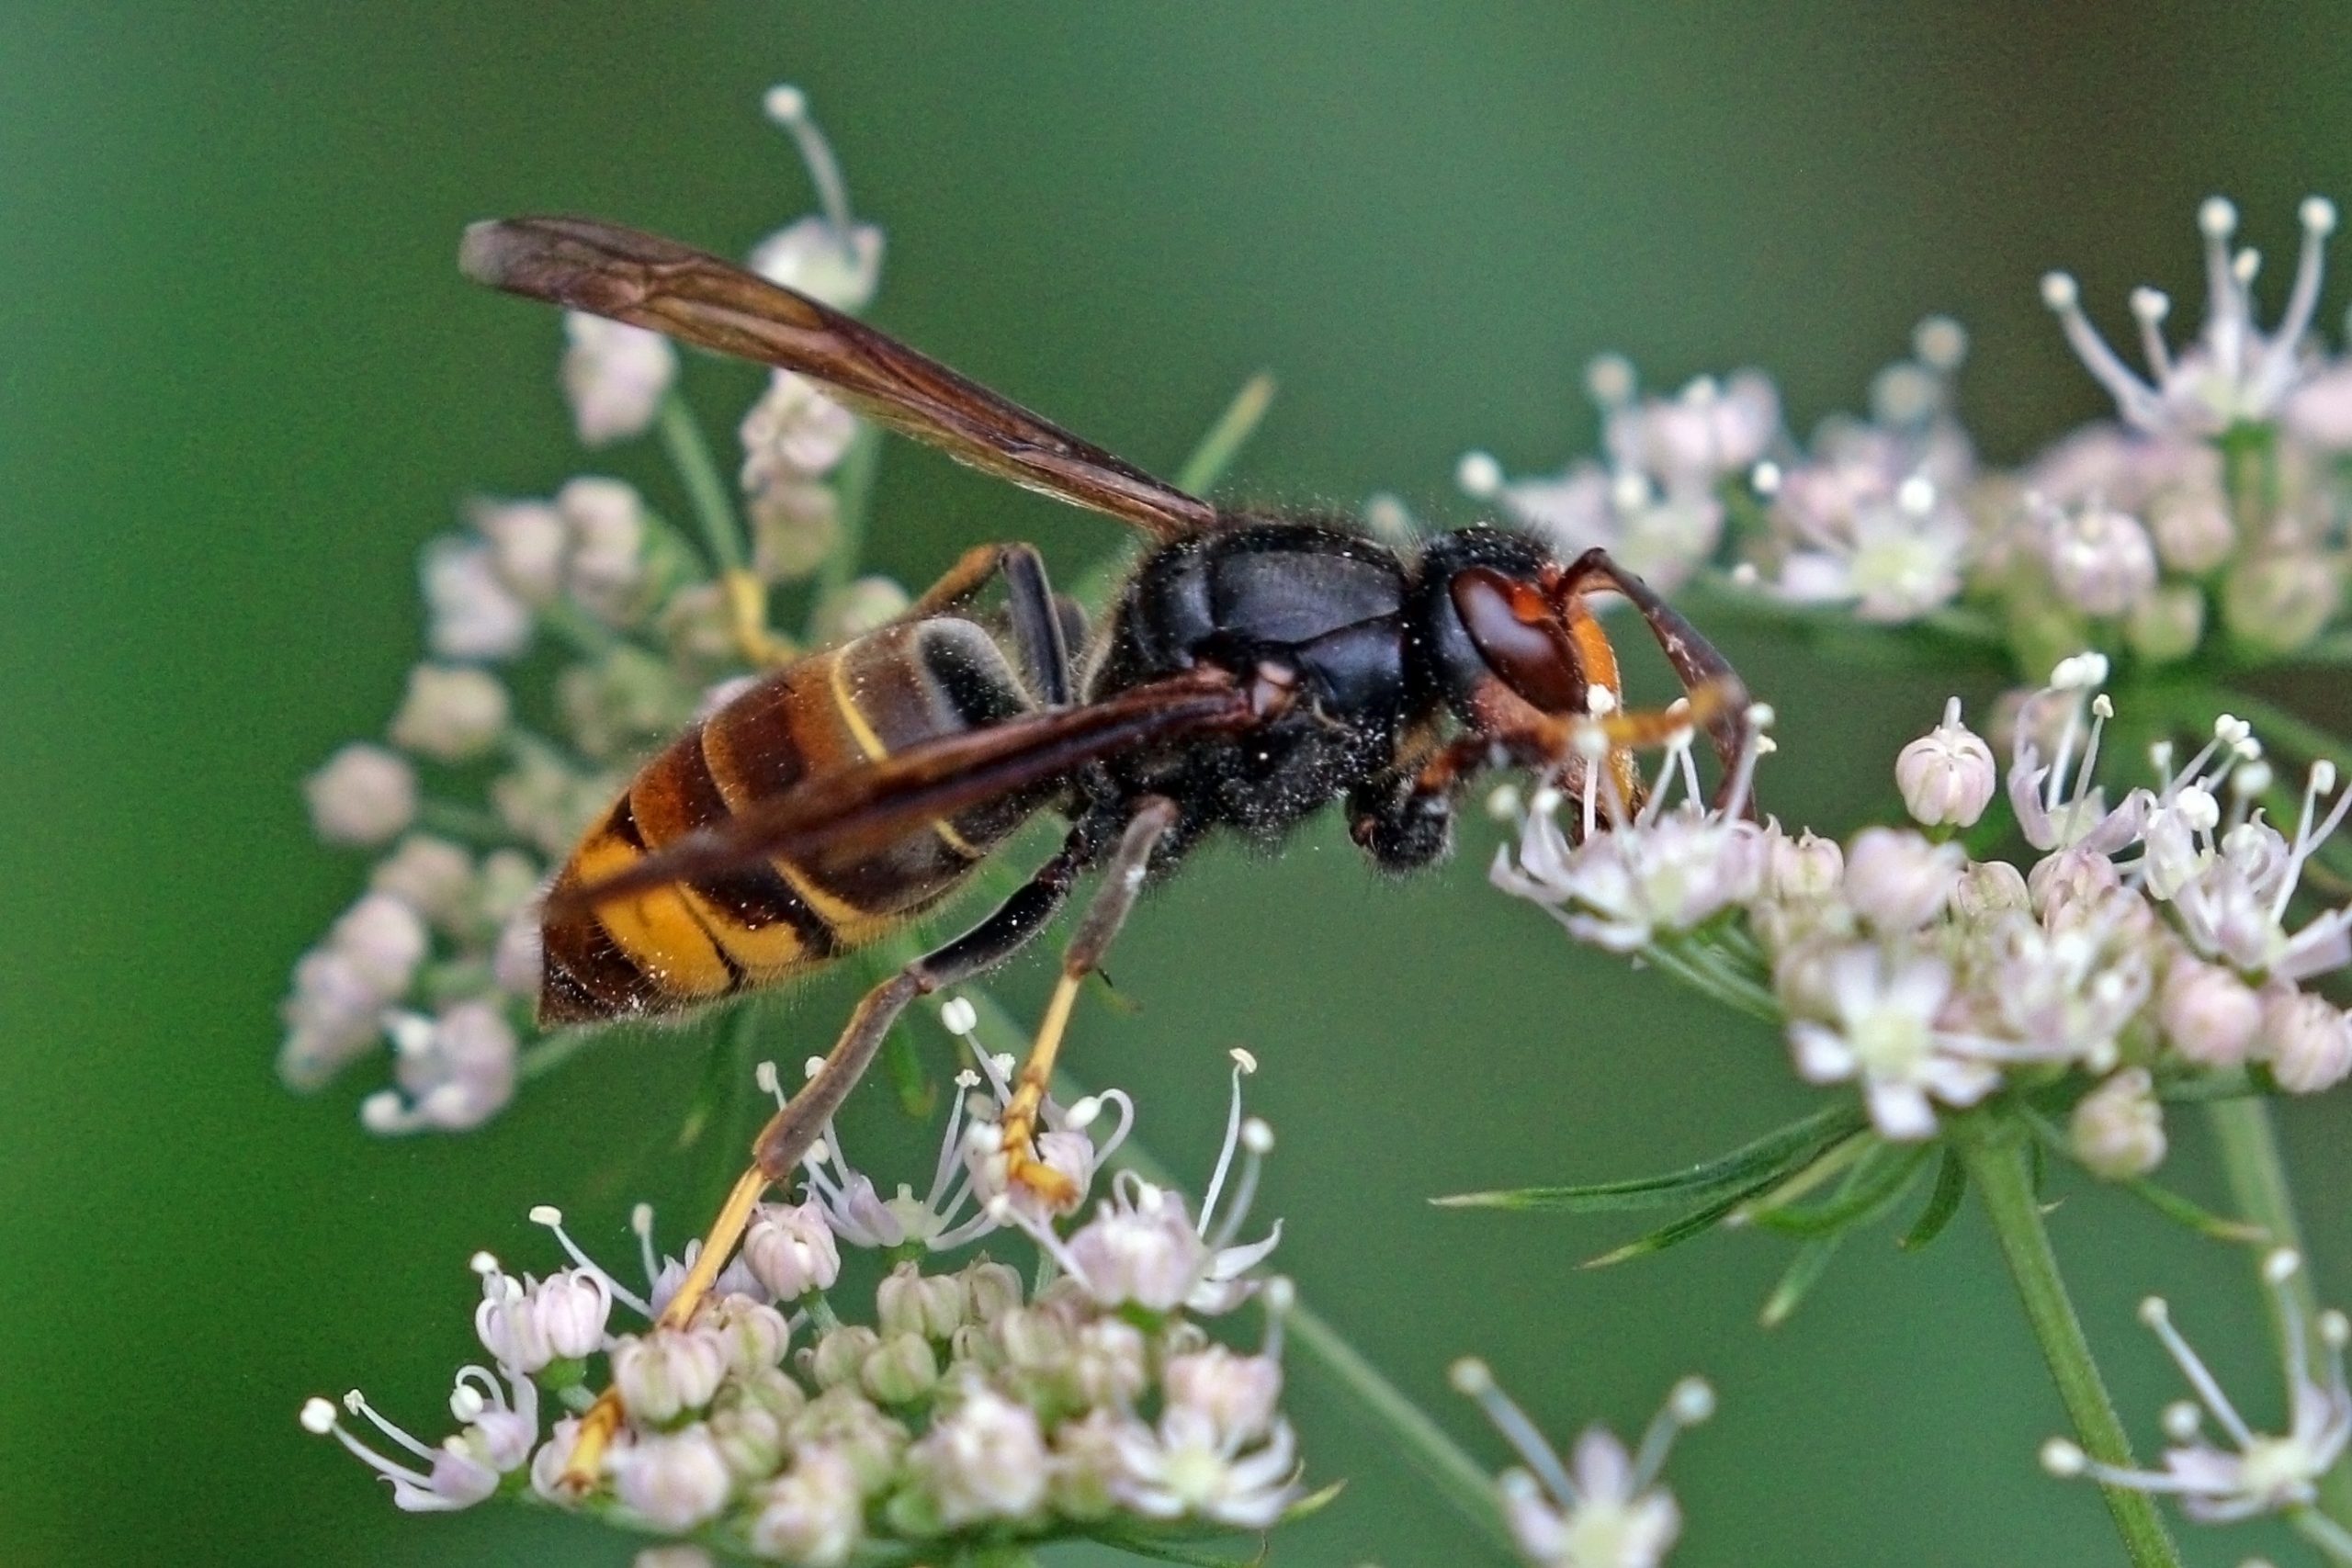 Opkomst van Aziatische Hoornaar in Nederland zorgt voor zorgen over risico’s en schade